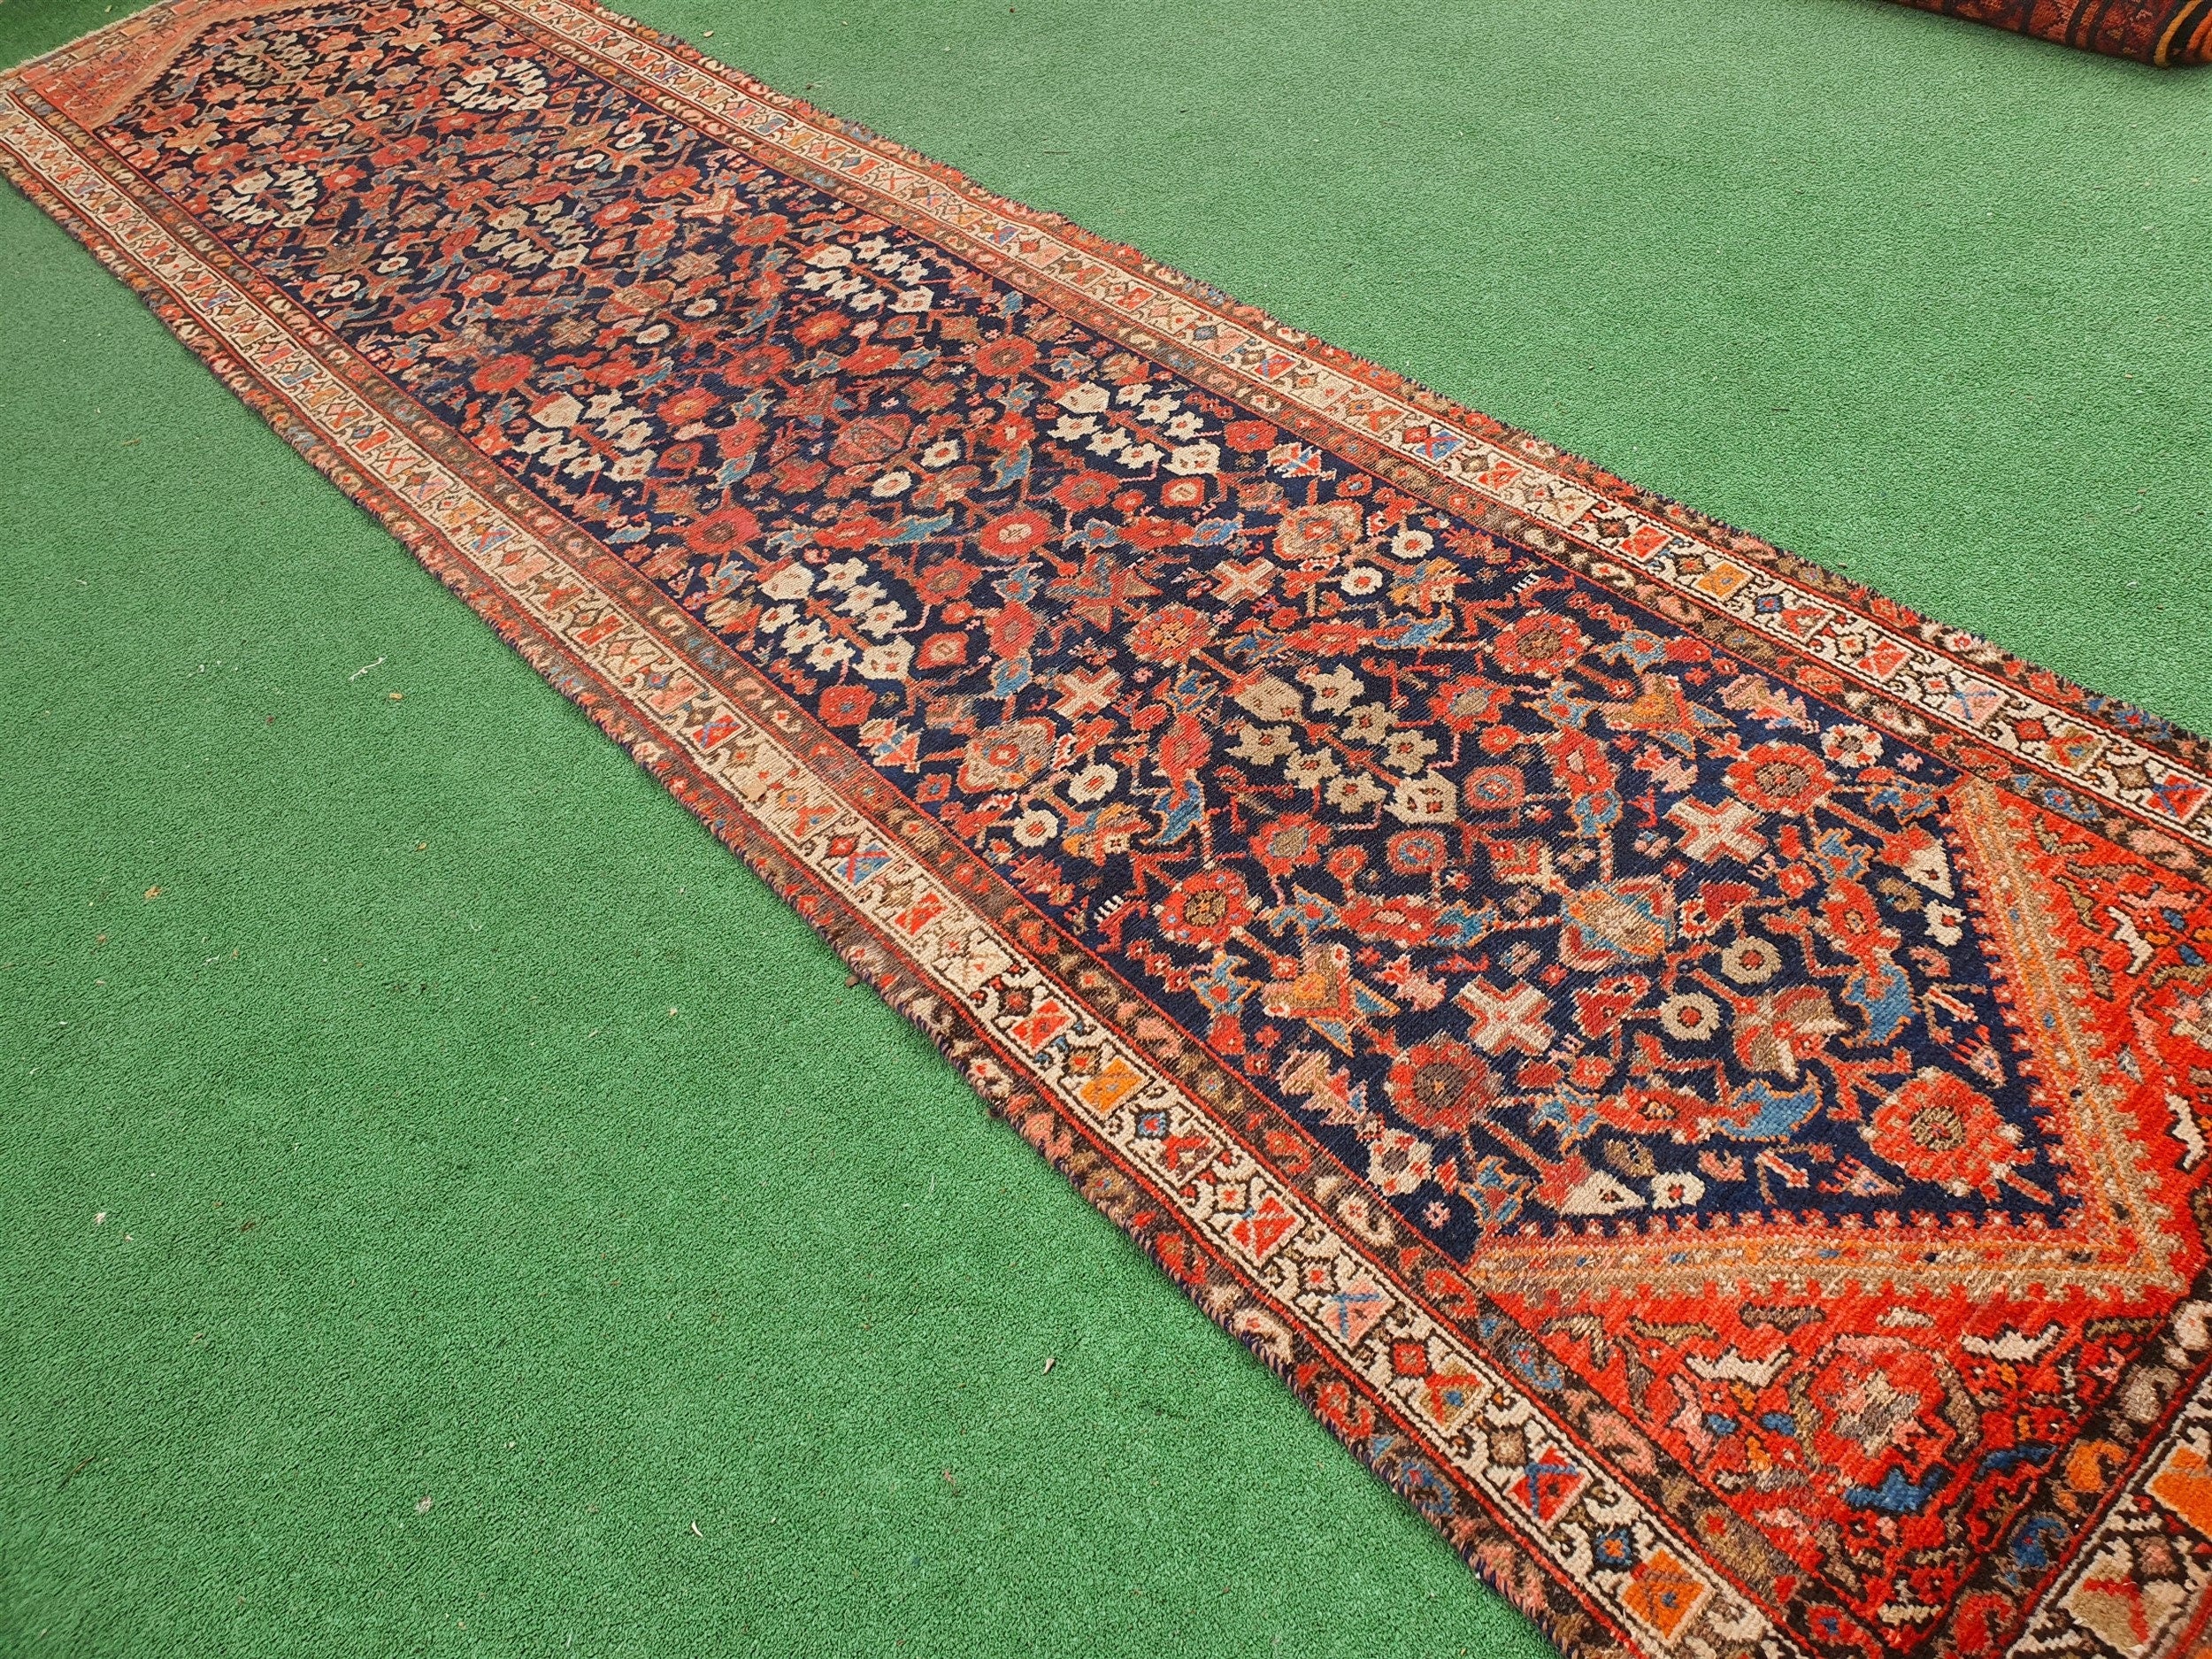 Vintage Persian Runner Rug 13 x 3 ft Blue Orange Beige Handmade Natural Wool Long Oriental Rug